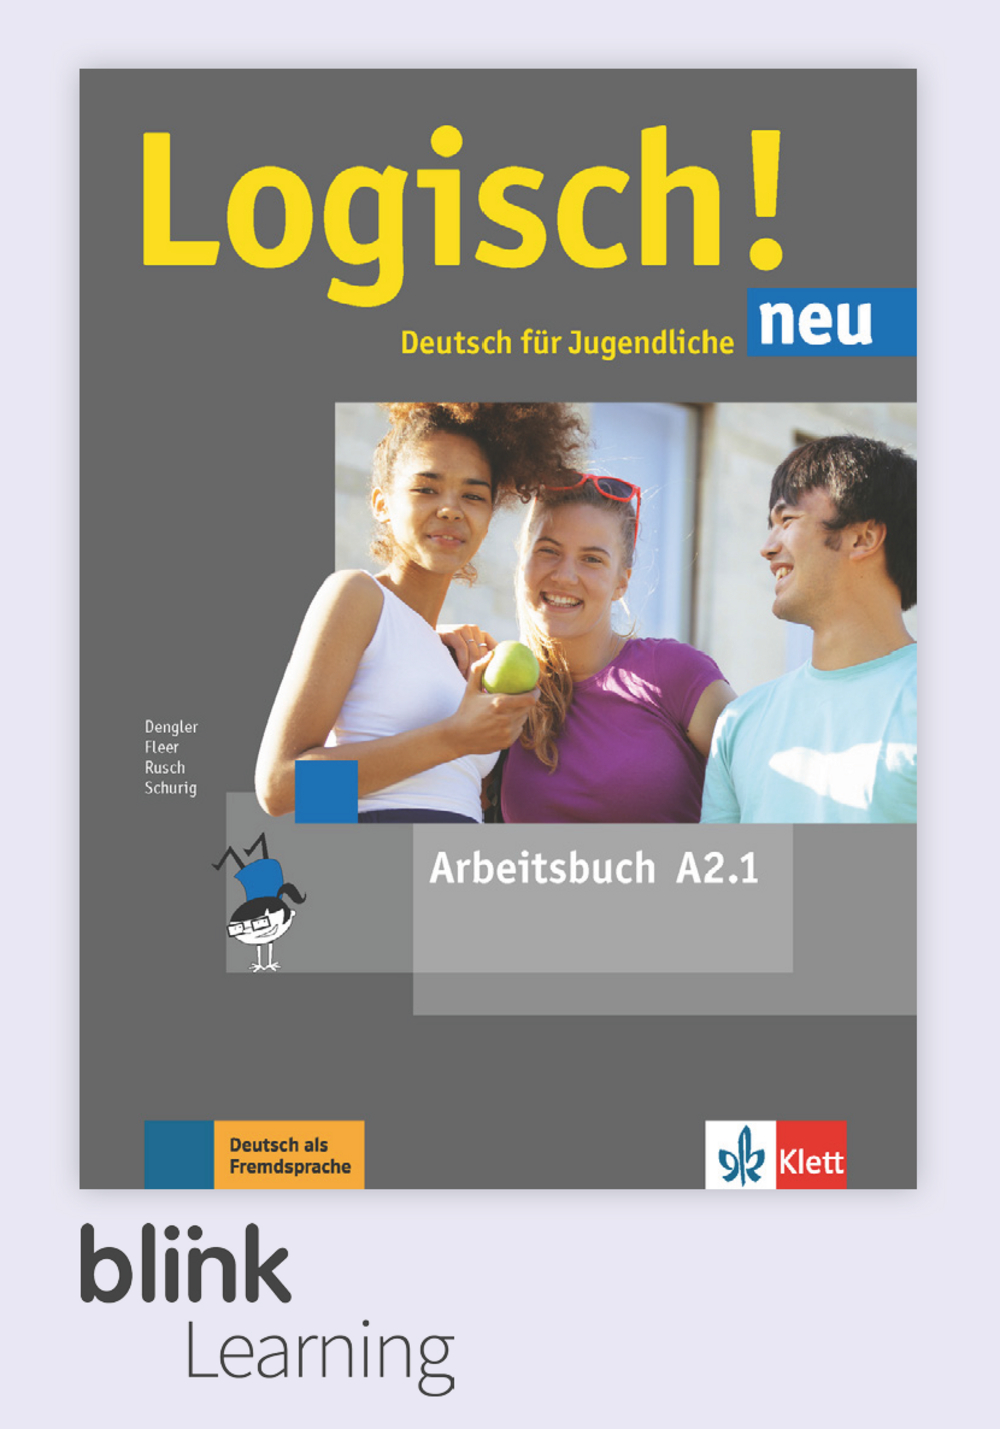 Logisch! NEU A2.1 Digital Arbeitsbuch für Logisch! neu A2.1 Digital Arbeitsbuch fur Lernende / Цифровая рабочая тетрадь для ученика